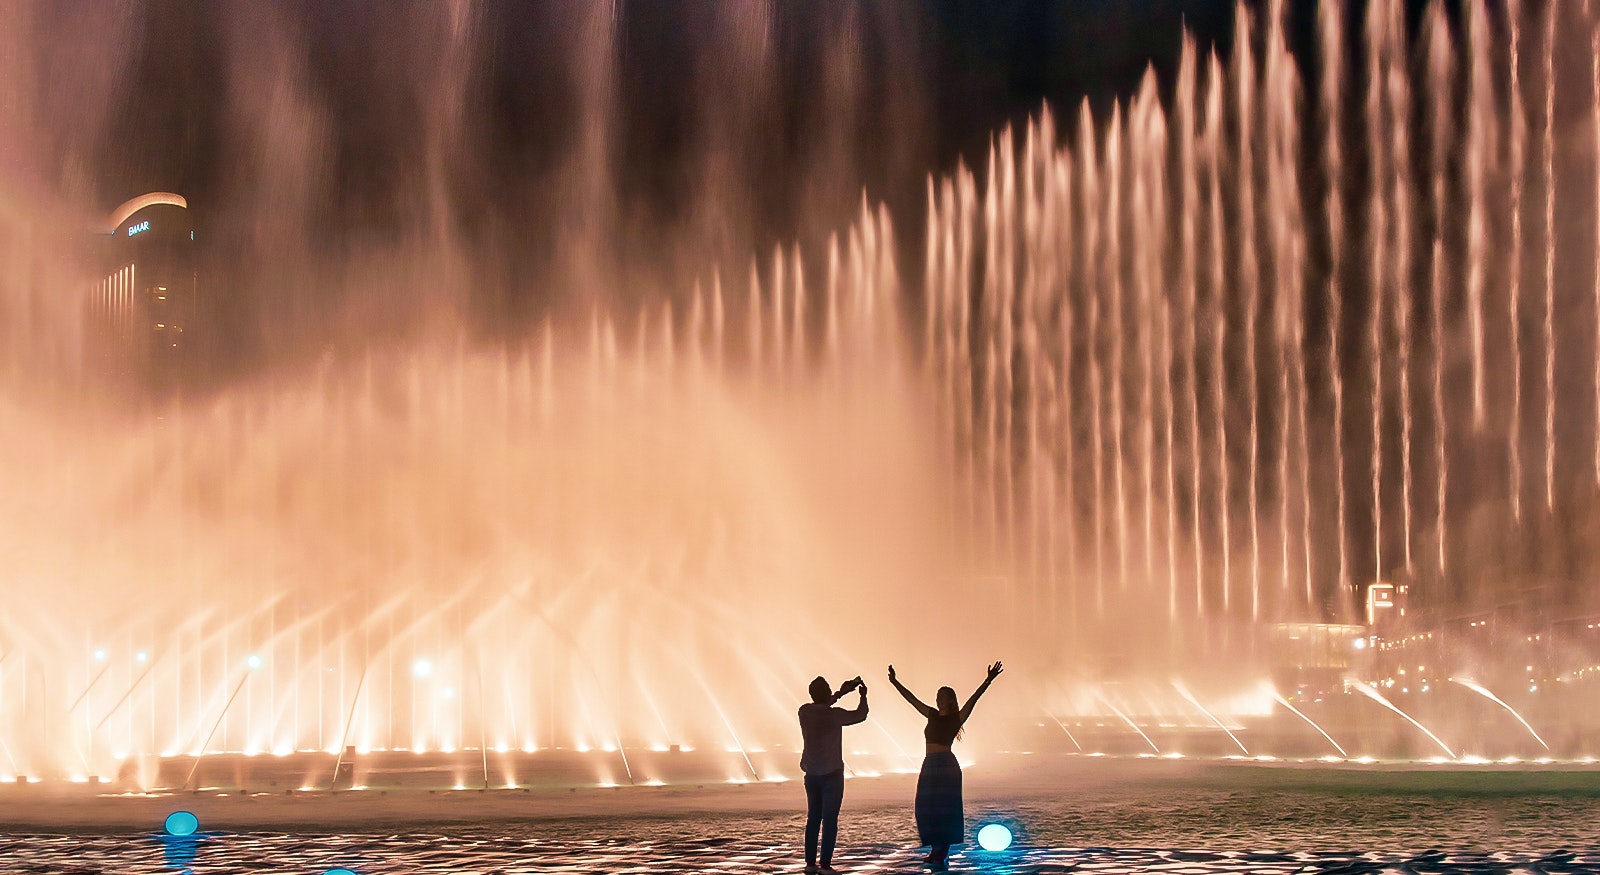 Dubai Fountain Boardwalk 